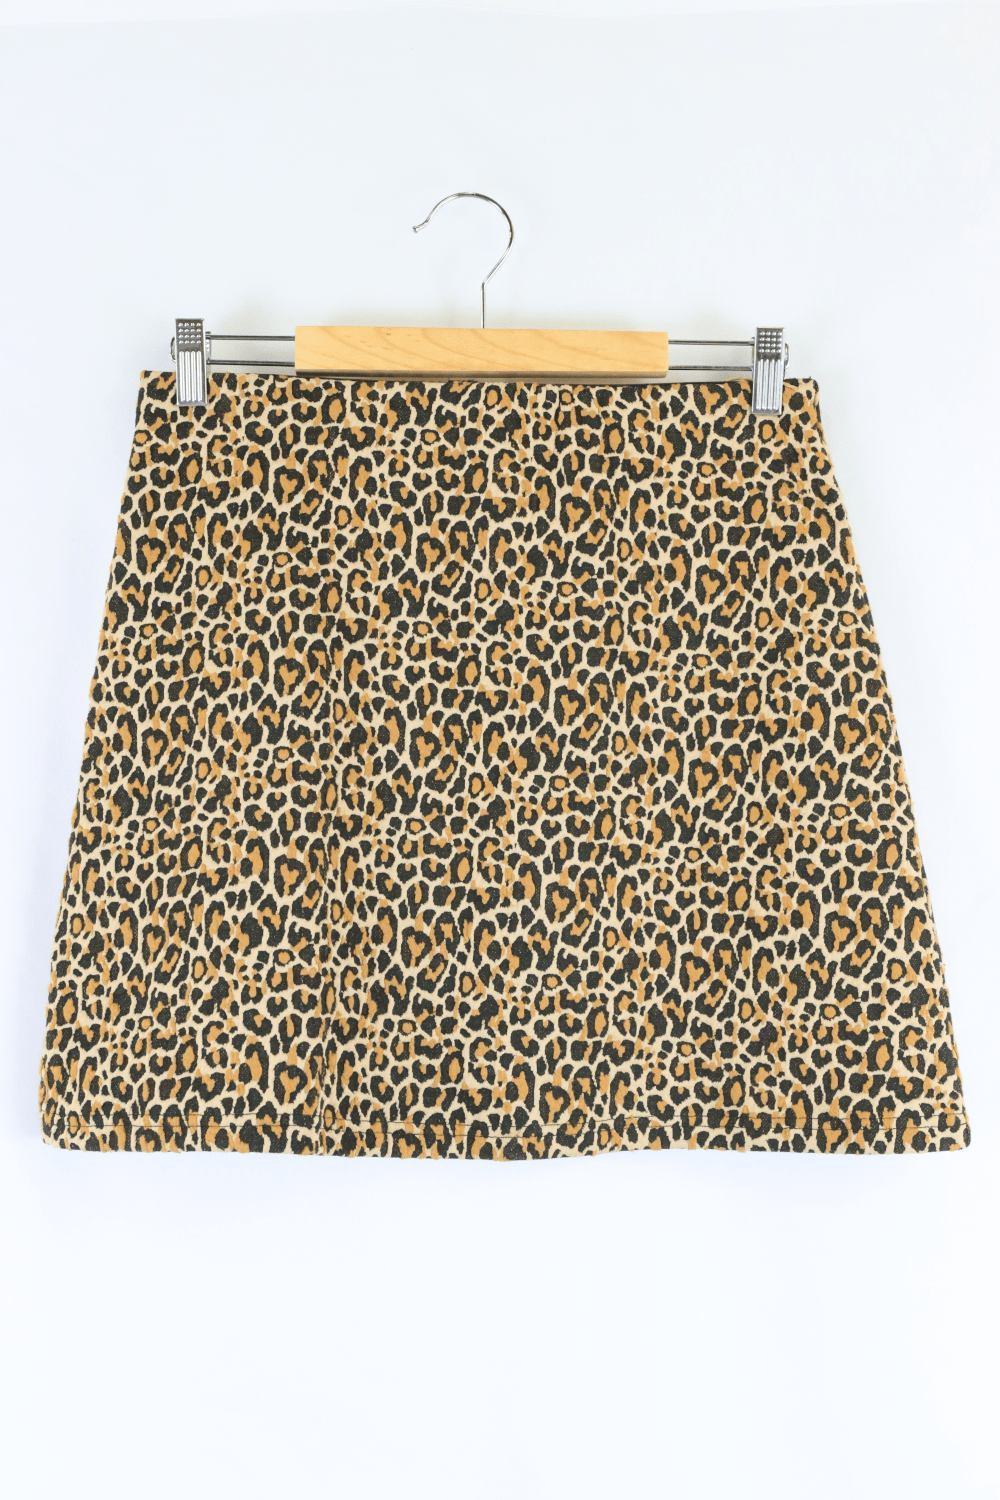 Sportsgirl Animal Print Skirt S